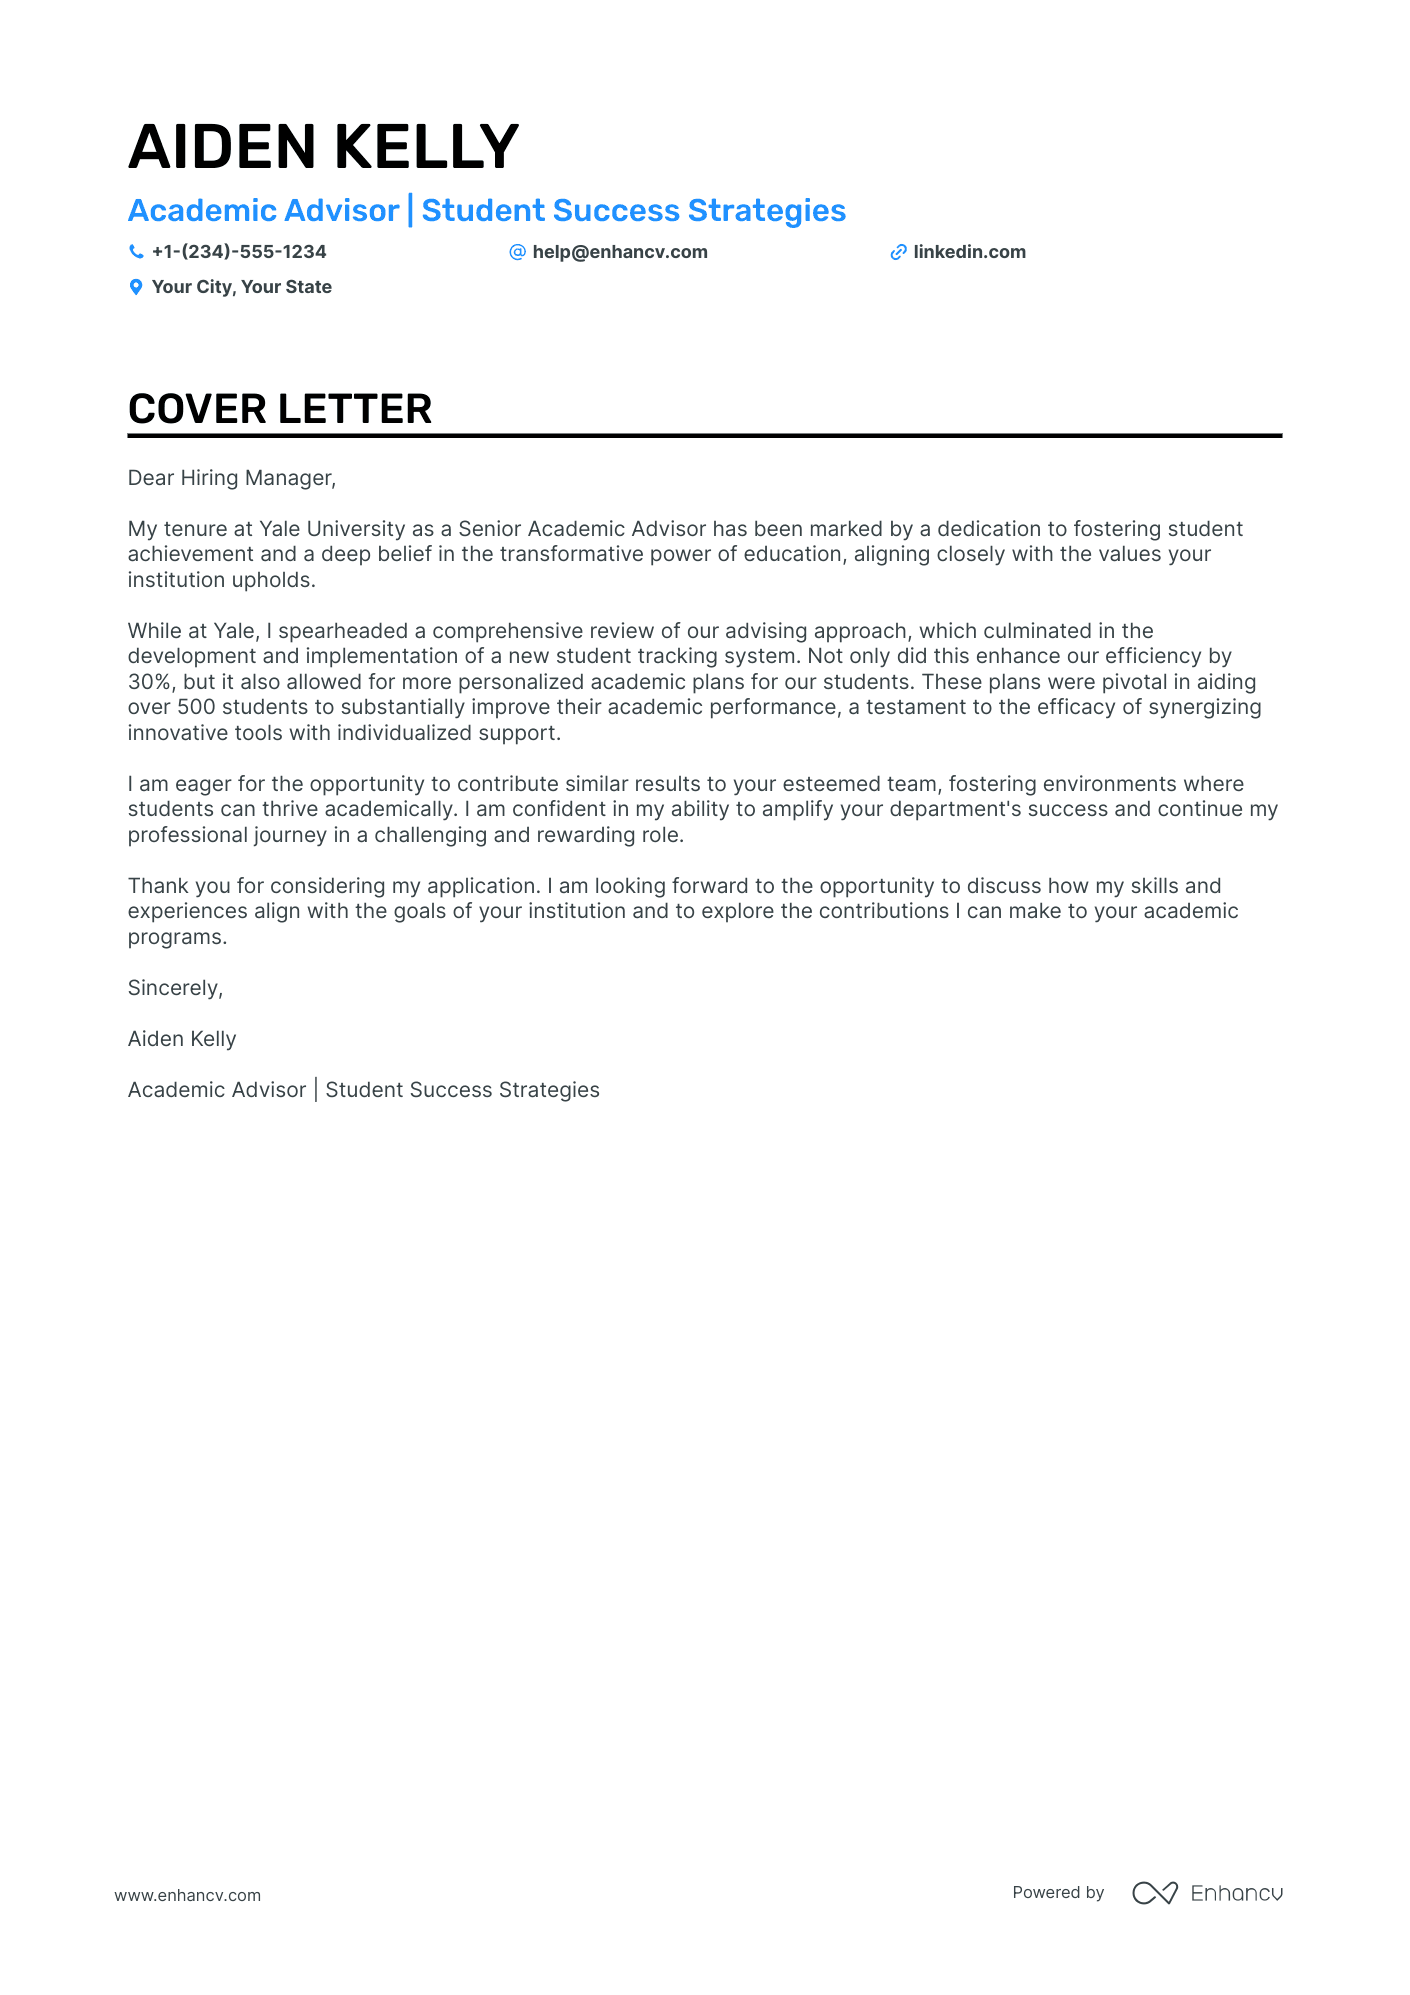 Academic Advisor cover letter